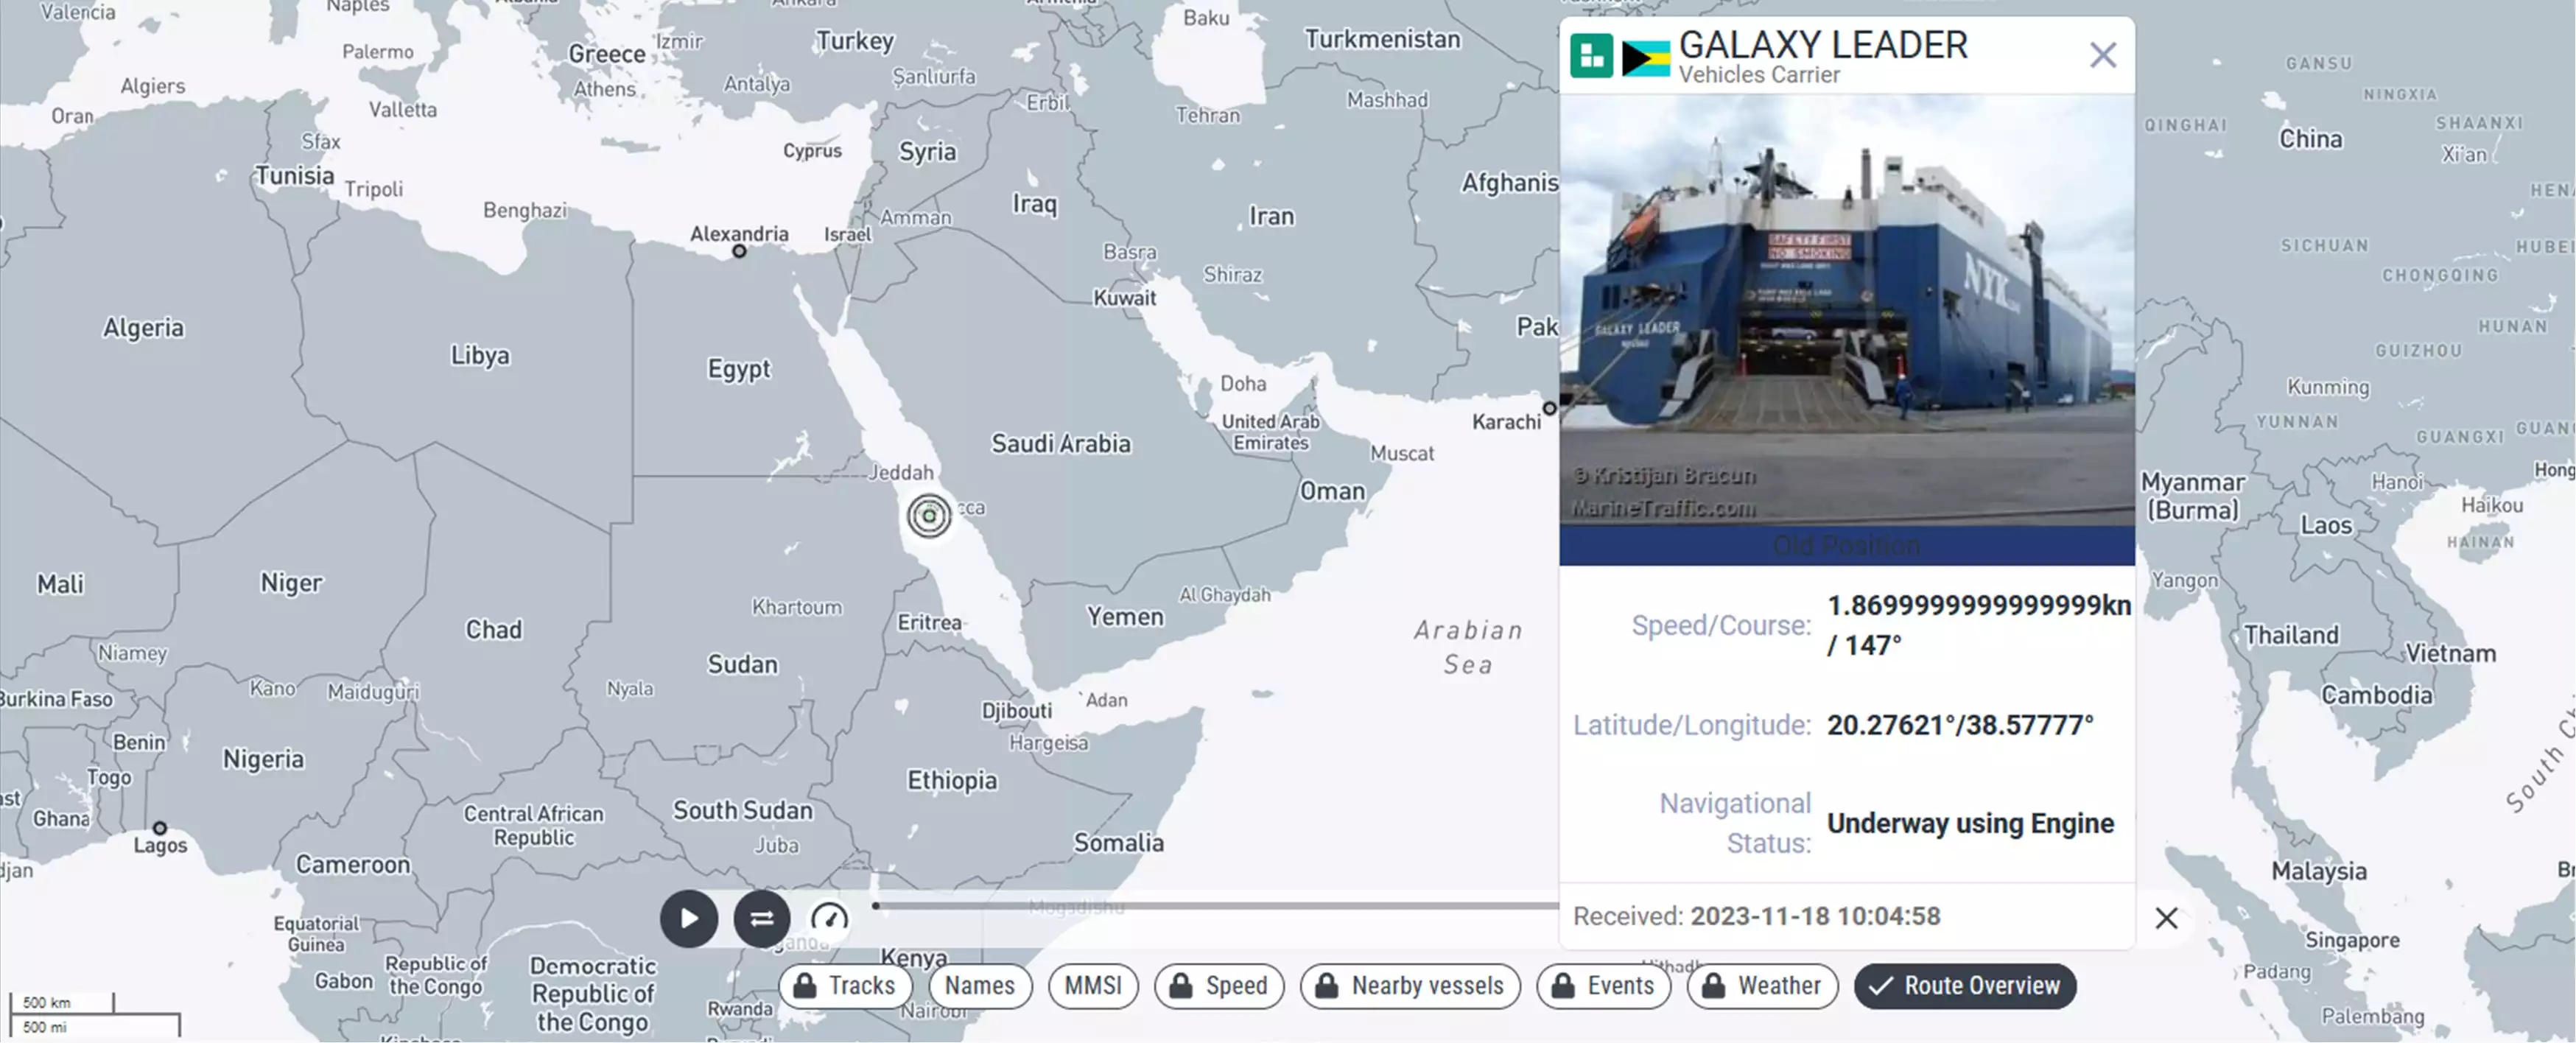 Dernière position connue du cargo Galaxy Leader (Ro/Ro) avant son interception par des Houthis.